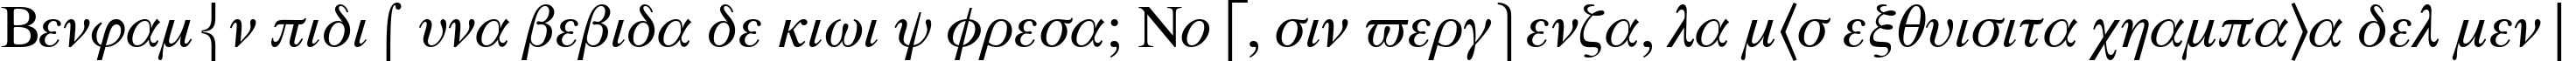 Пример написания шрифтом Symbol Proportional BT текста на испанском